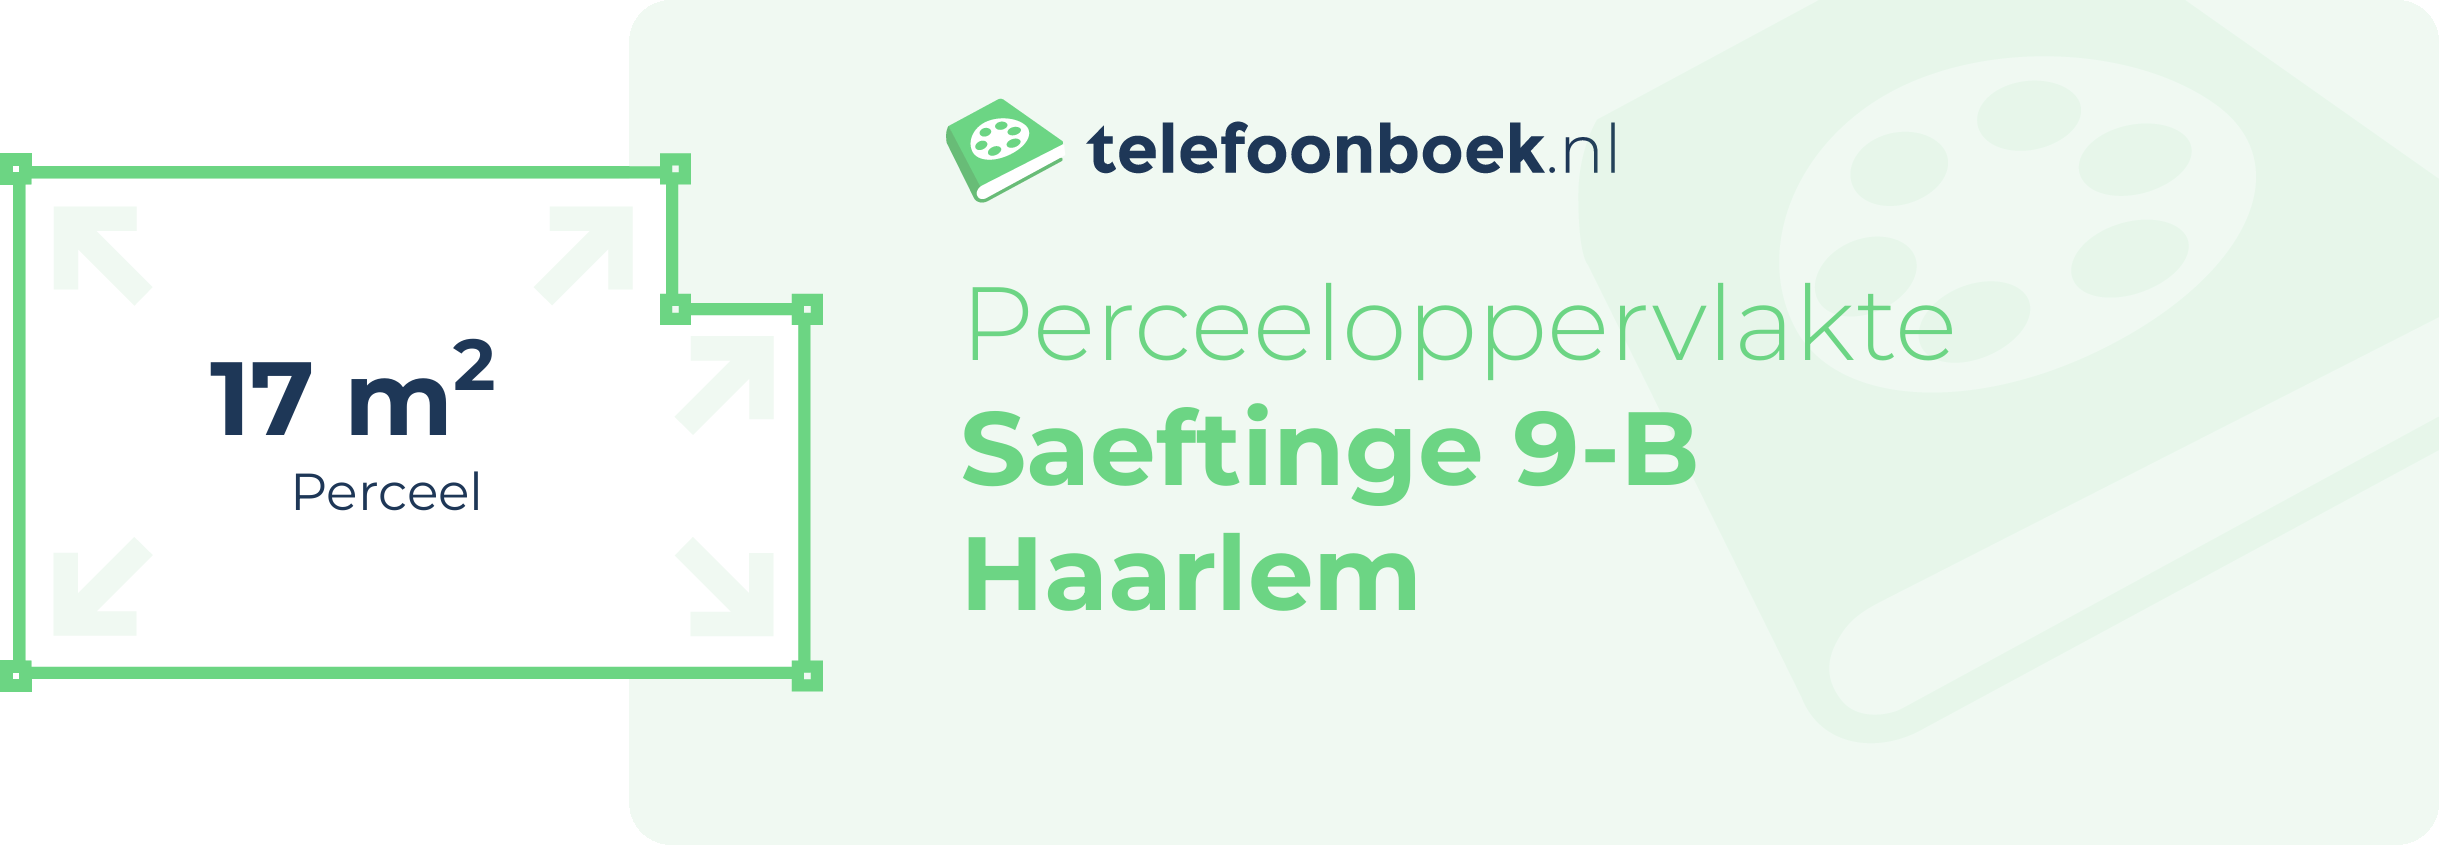 Perceeloppervlakte Saeftinge 9-B Haarlem